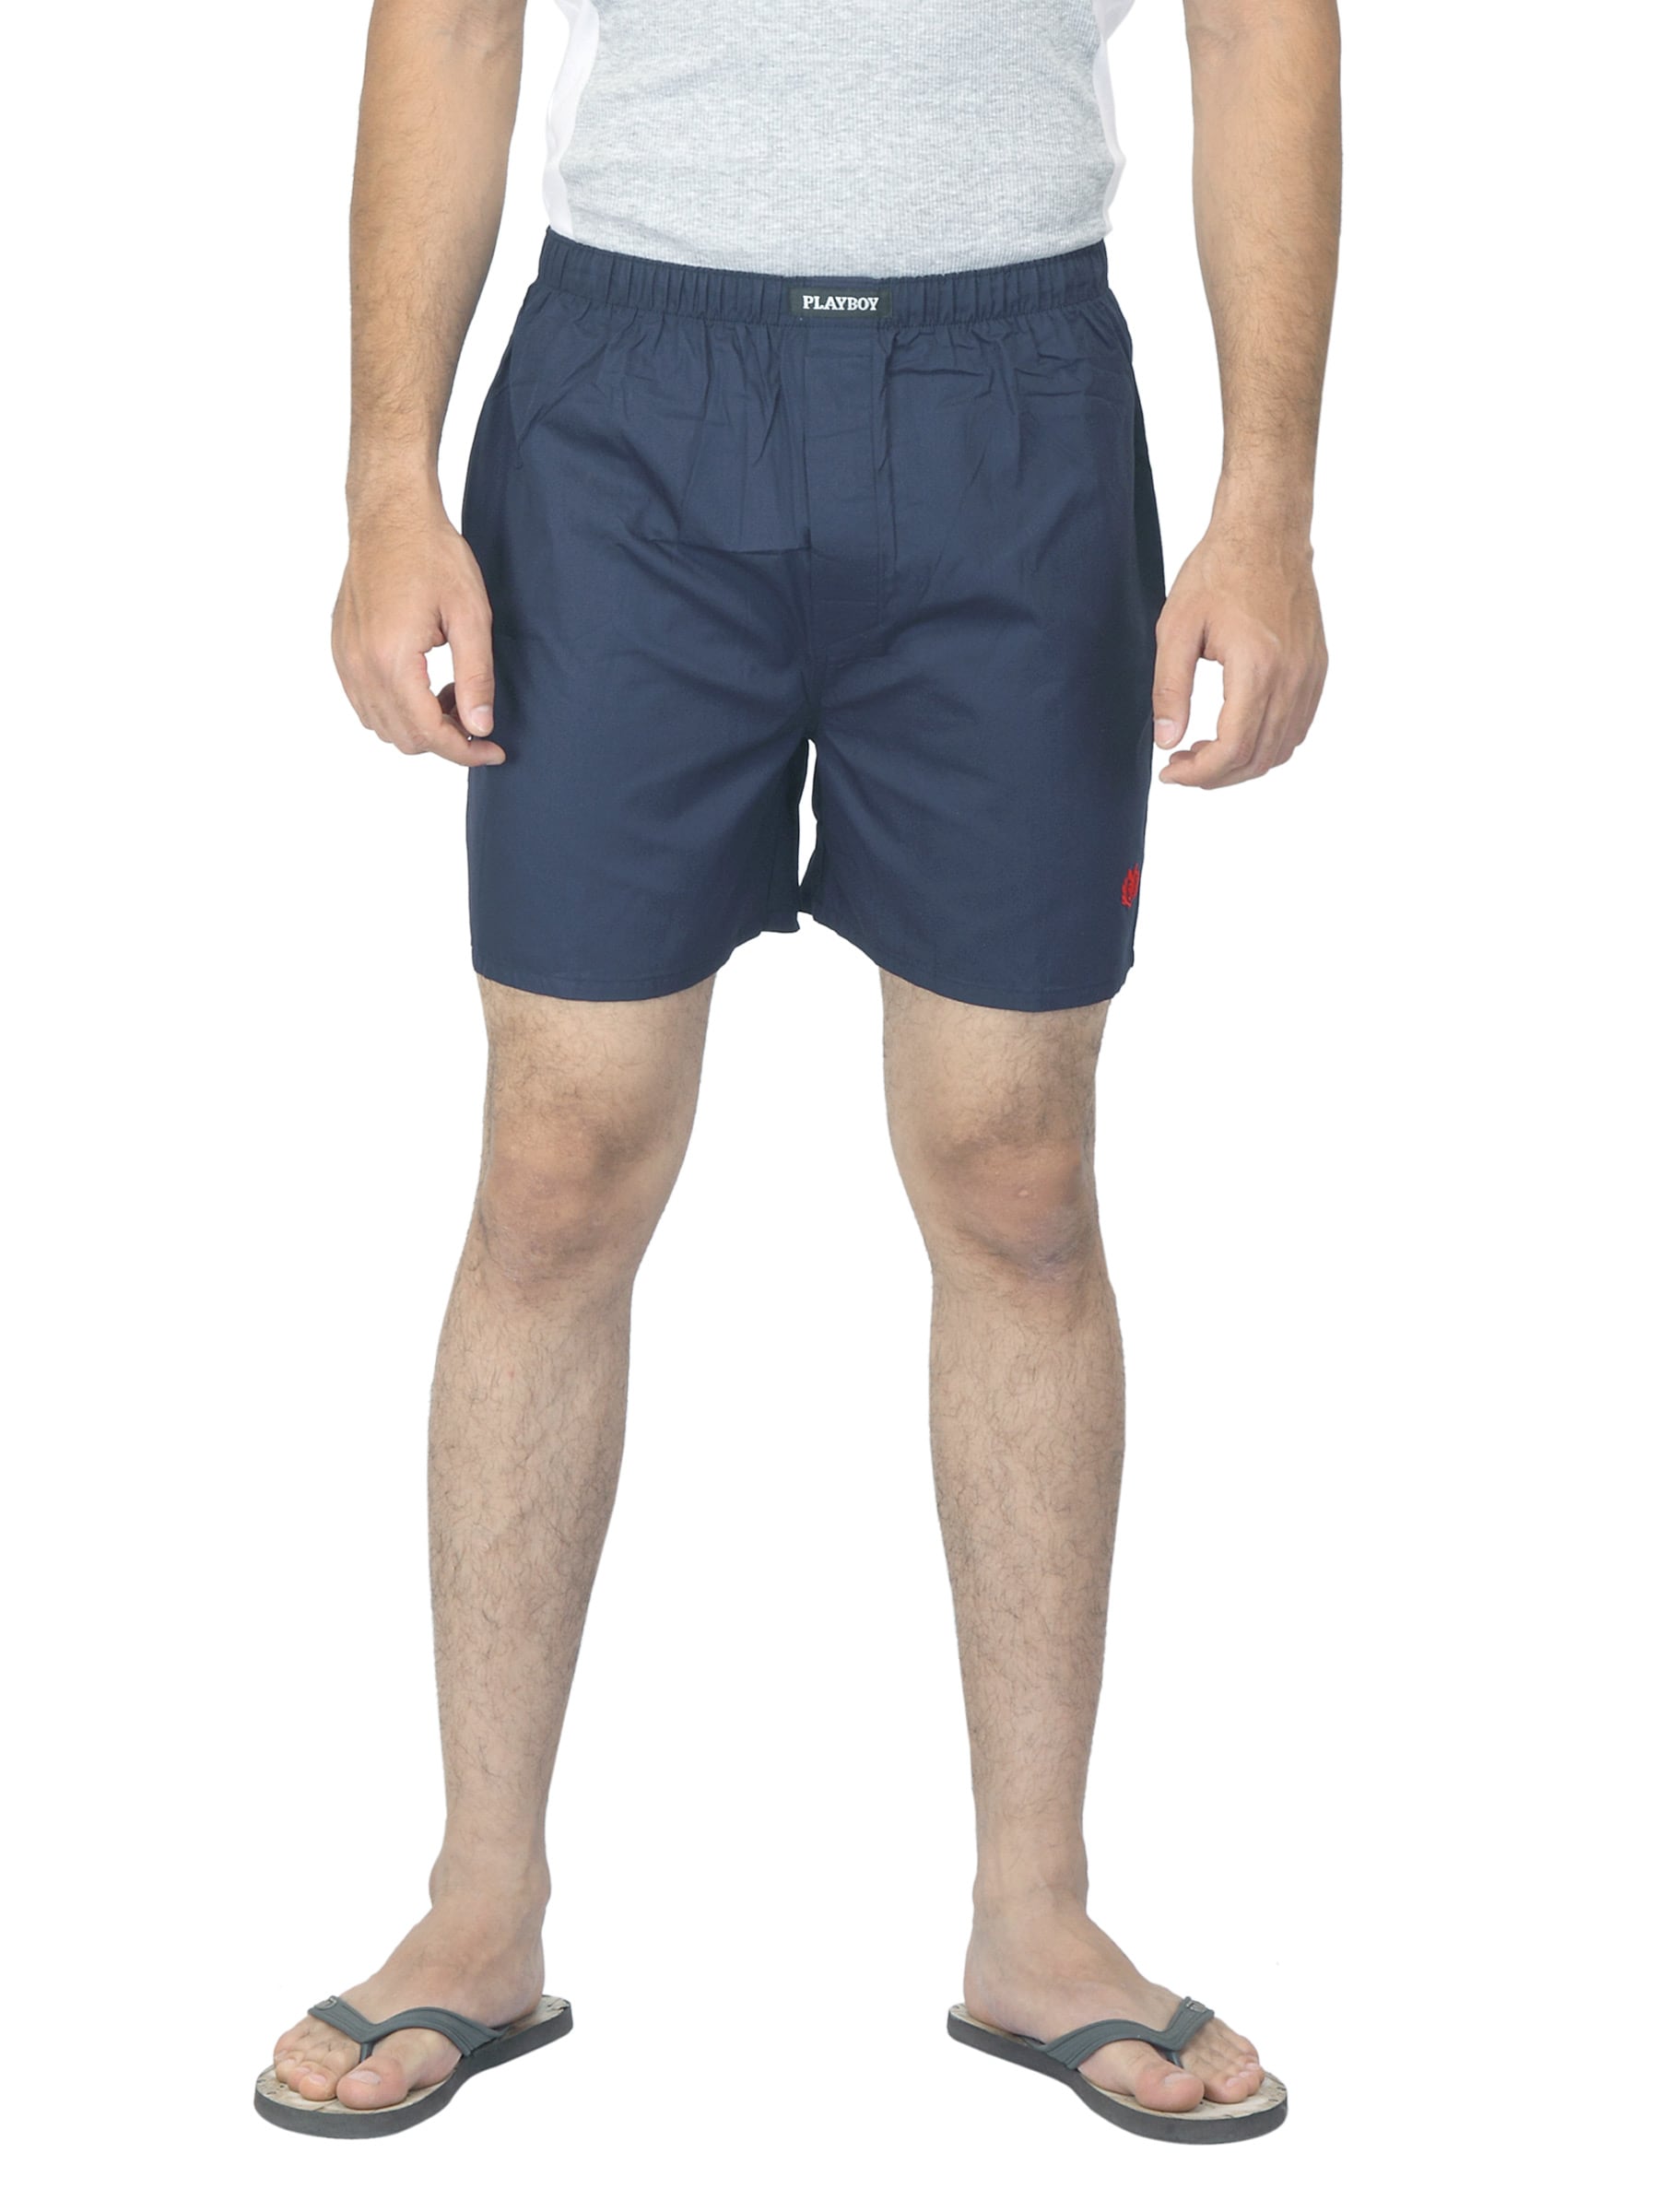 Playboy Men Navy Blue Shorts